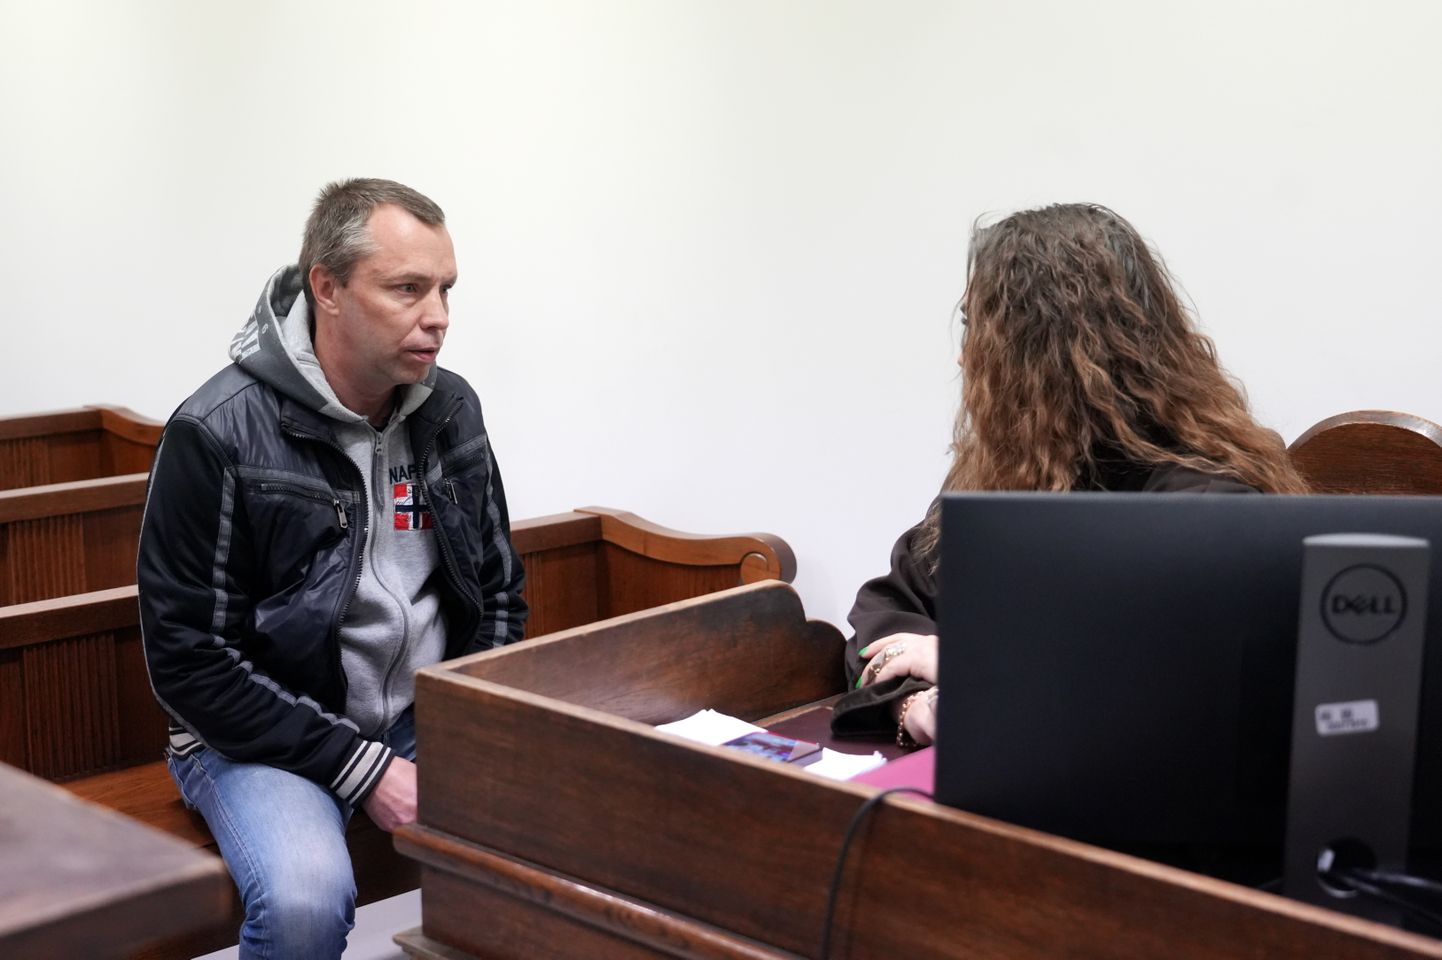 Krimināllietā apsūdzētais taksists Sergejs Sidorovs pirms tiesas sēdes Rīgas pilsētas tiesā, kurā sāks skatīt krimināllietu par spiegošanu Krievijas labā.